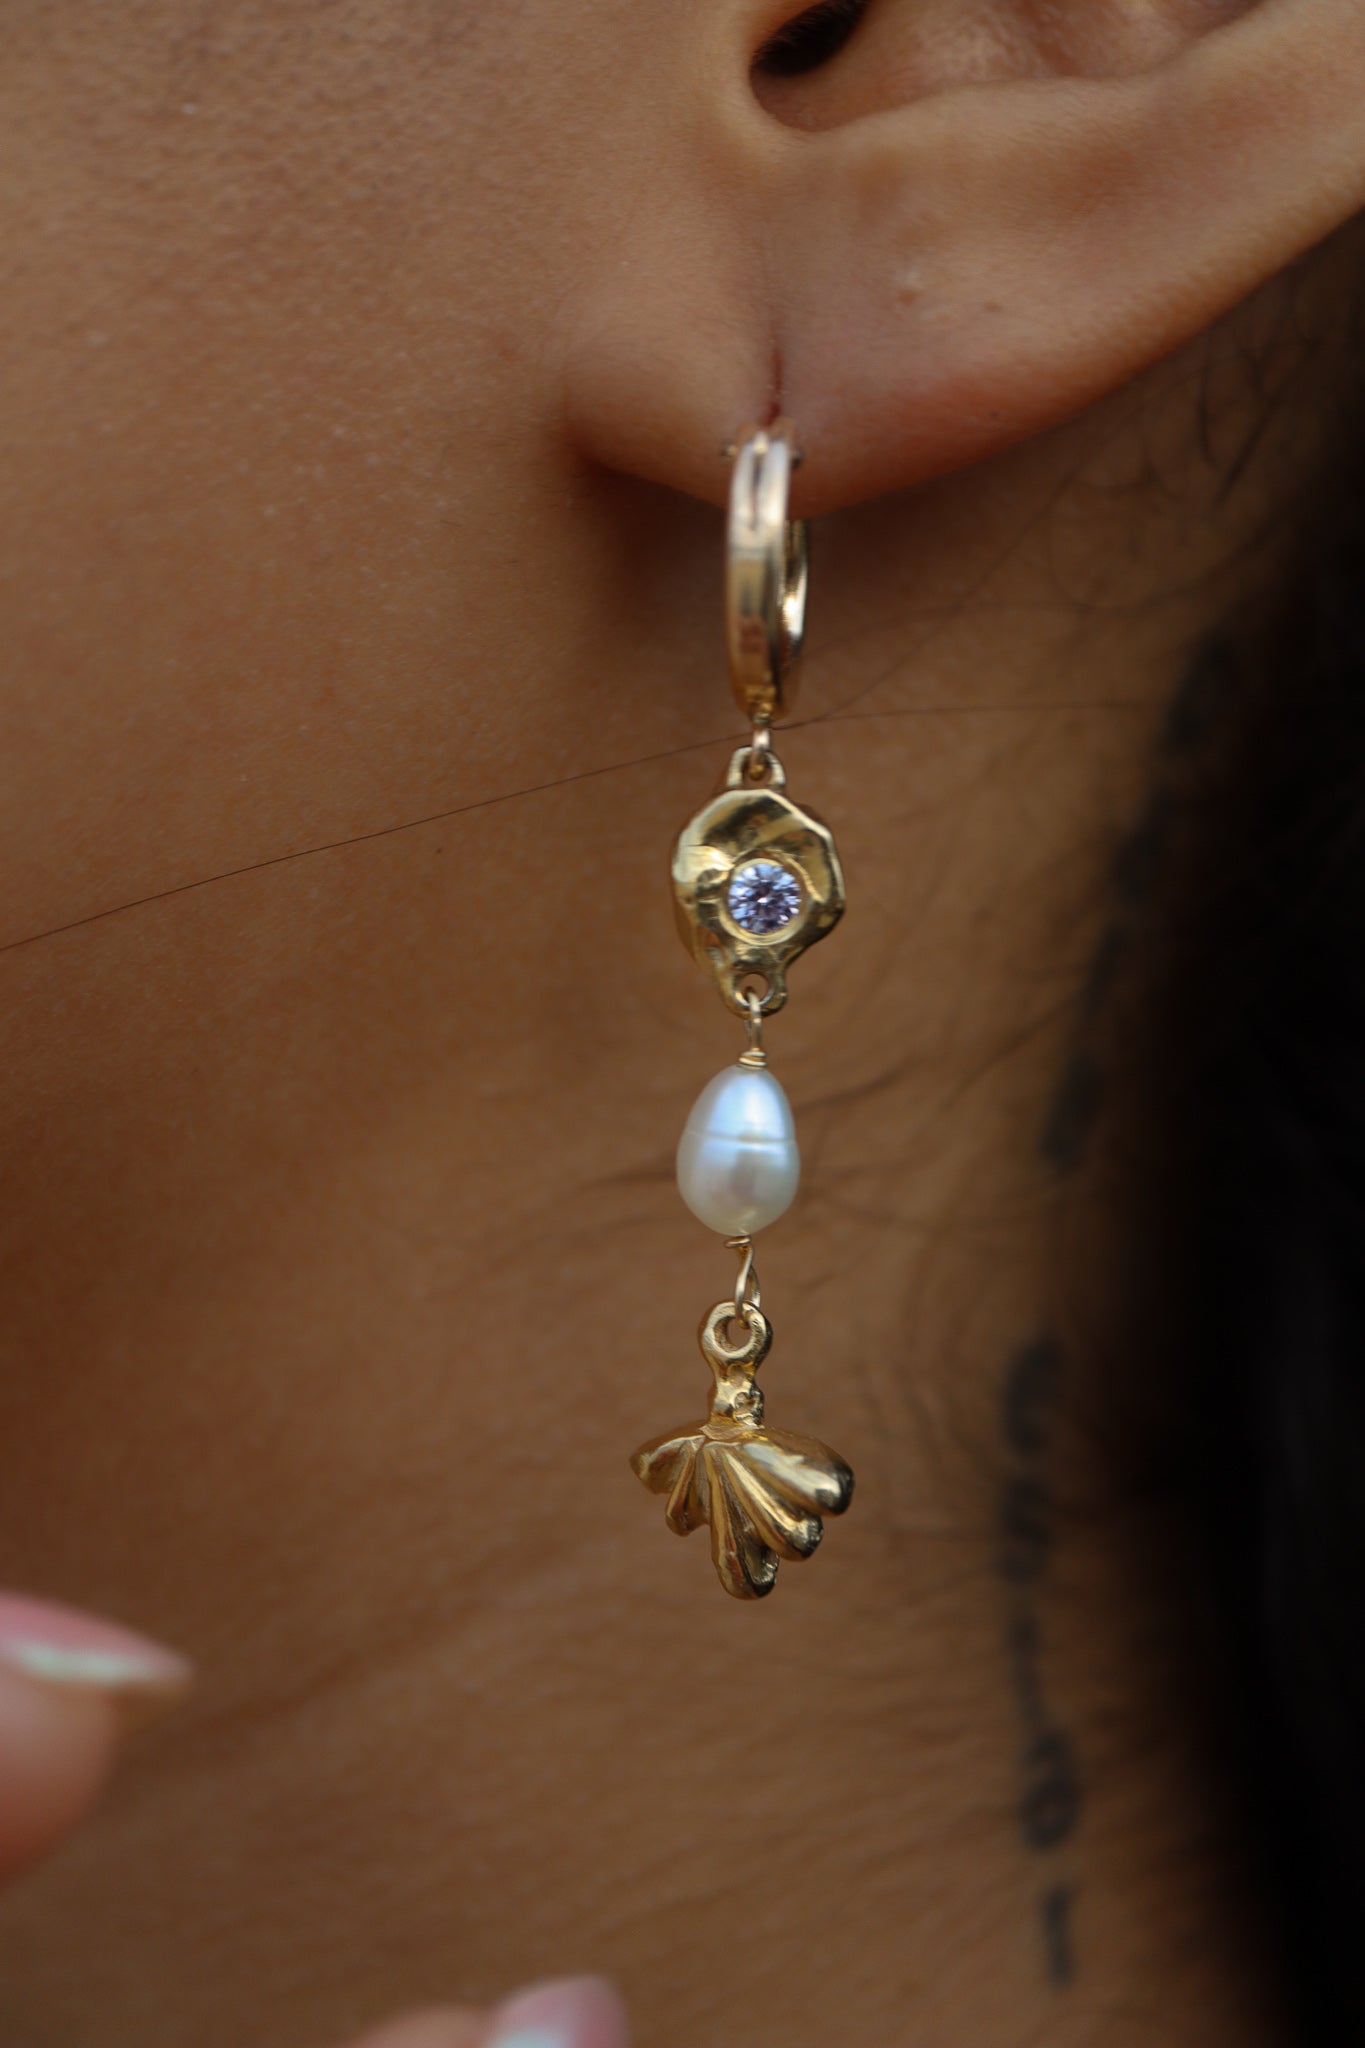 Hera earrings